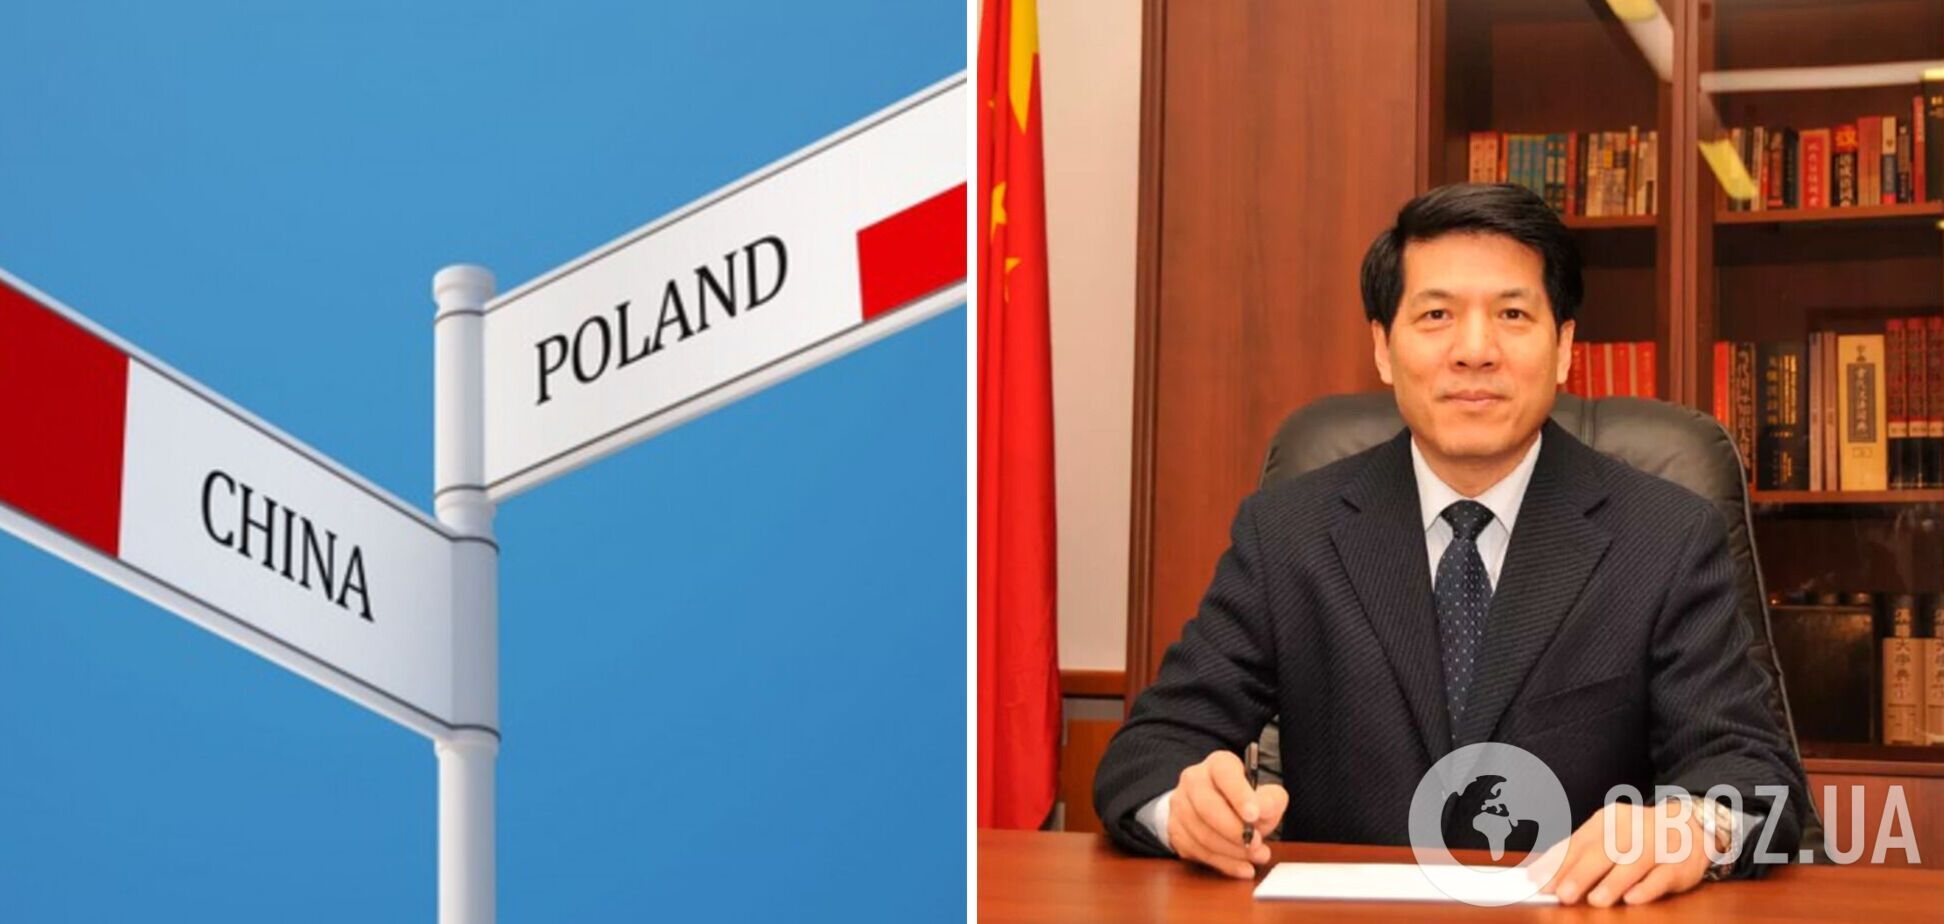 Спецпосланник Хуэй предложил Польше вместе с Китаем урегулировать 'украинский кризис'